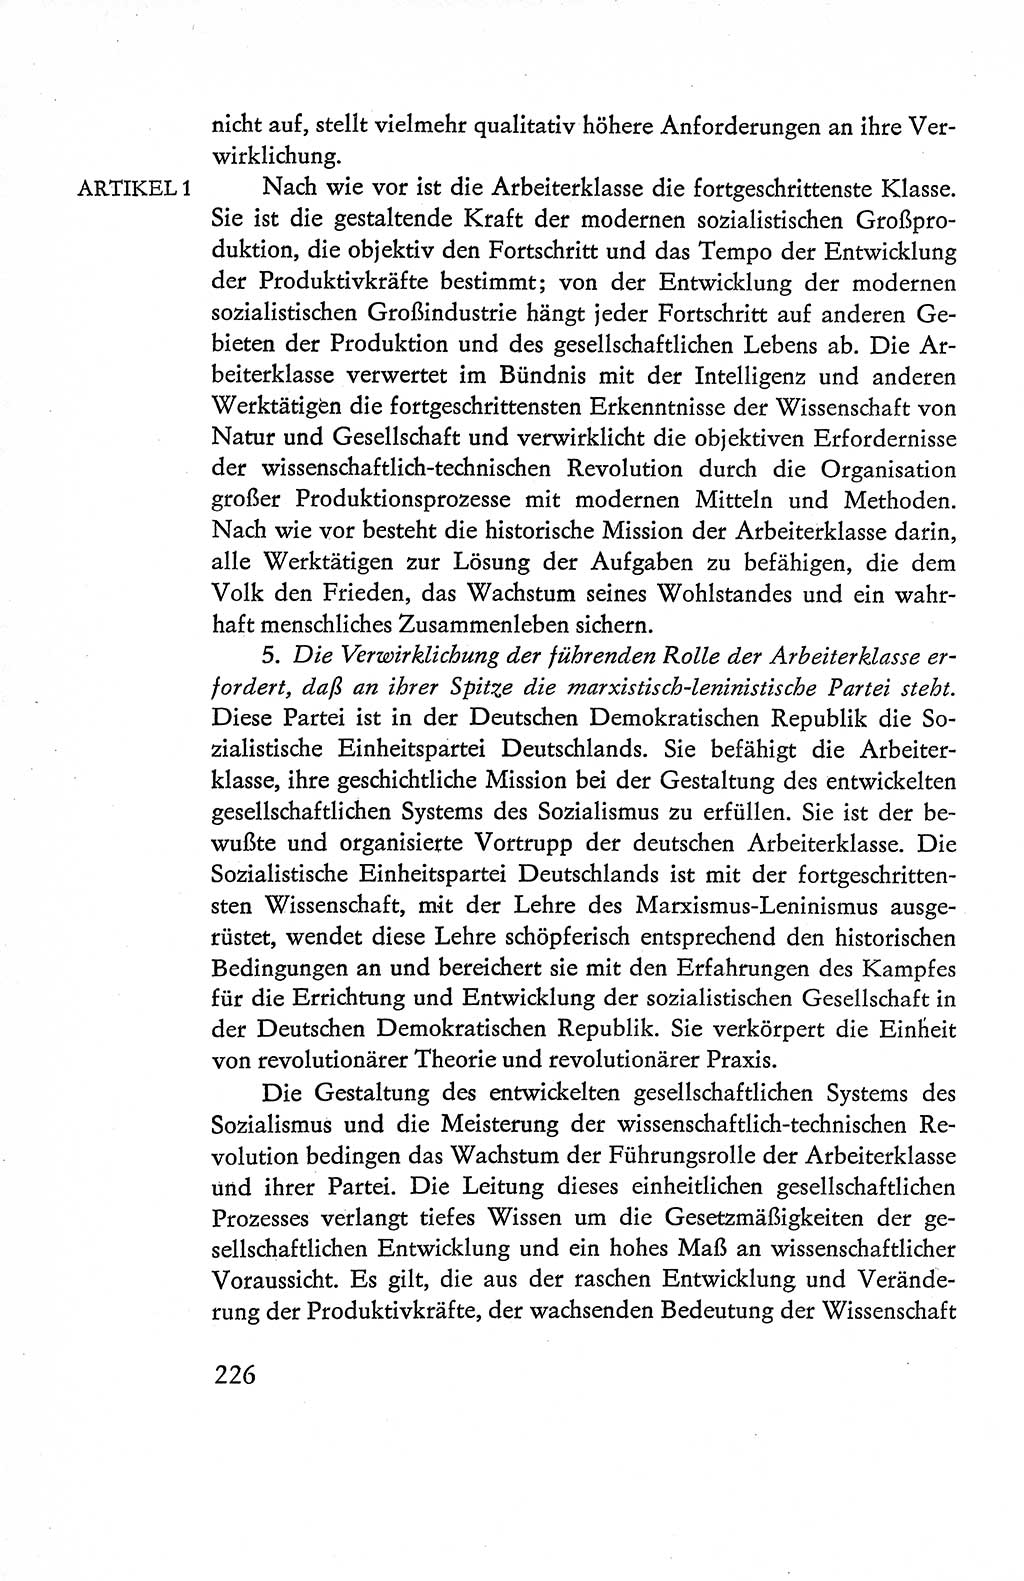 Verfassung der Deutschen Demokratischen Republik (DDR), Dokumente, Kommentar 1969, Band 1, Seite 226 (Verf. DDR Dok. Komm. 1969, Bd. 1, S. 226)